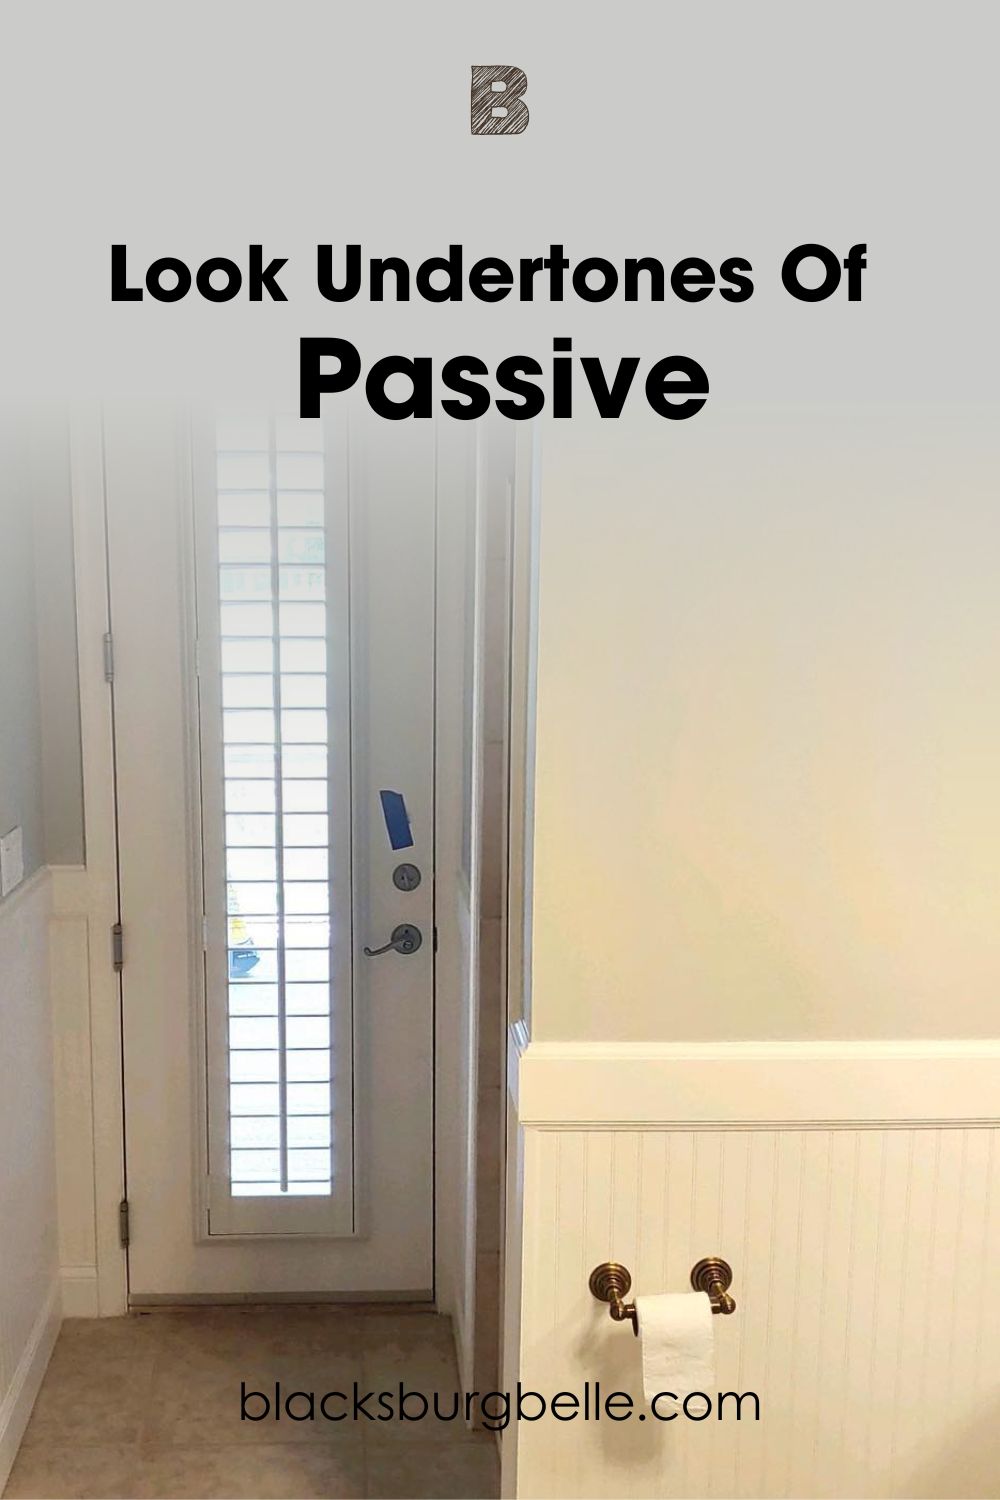 A Closer Look at Passive Undertones